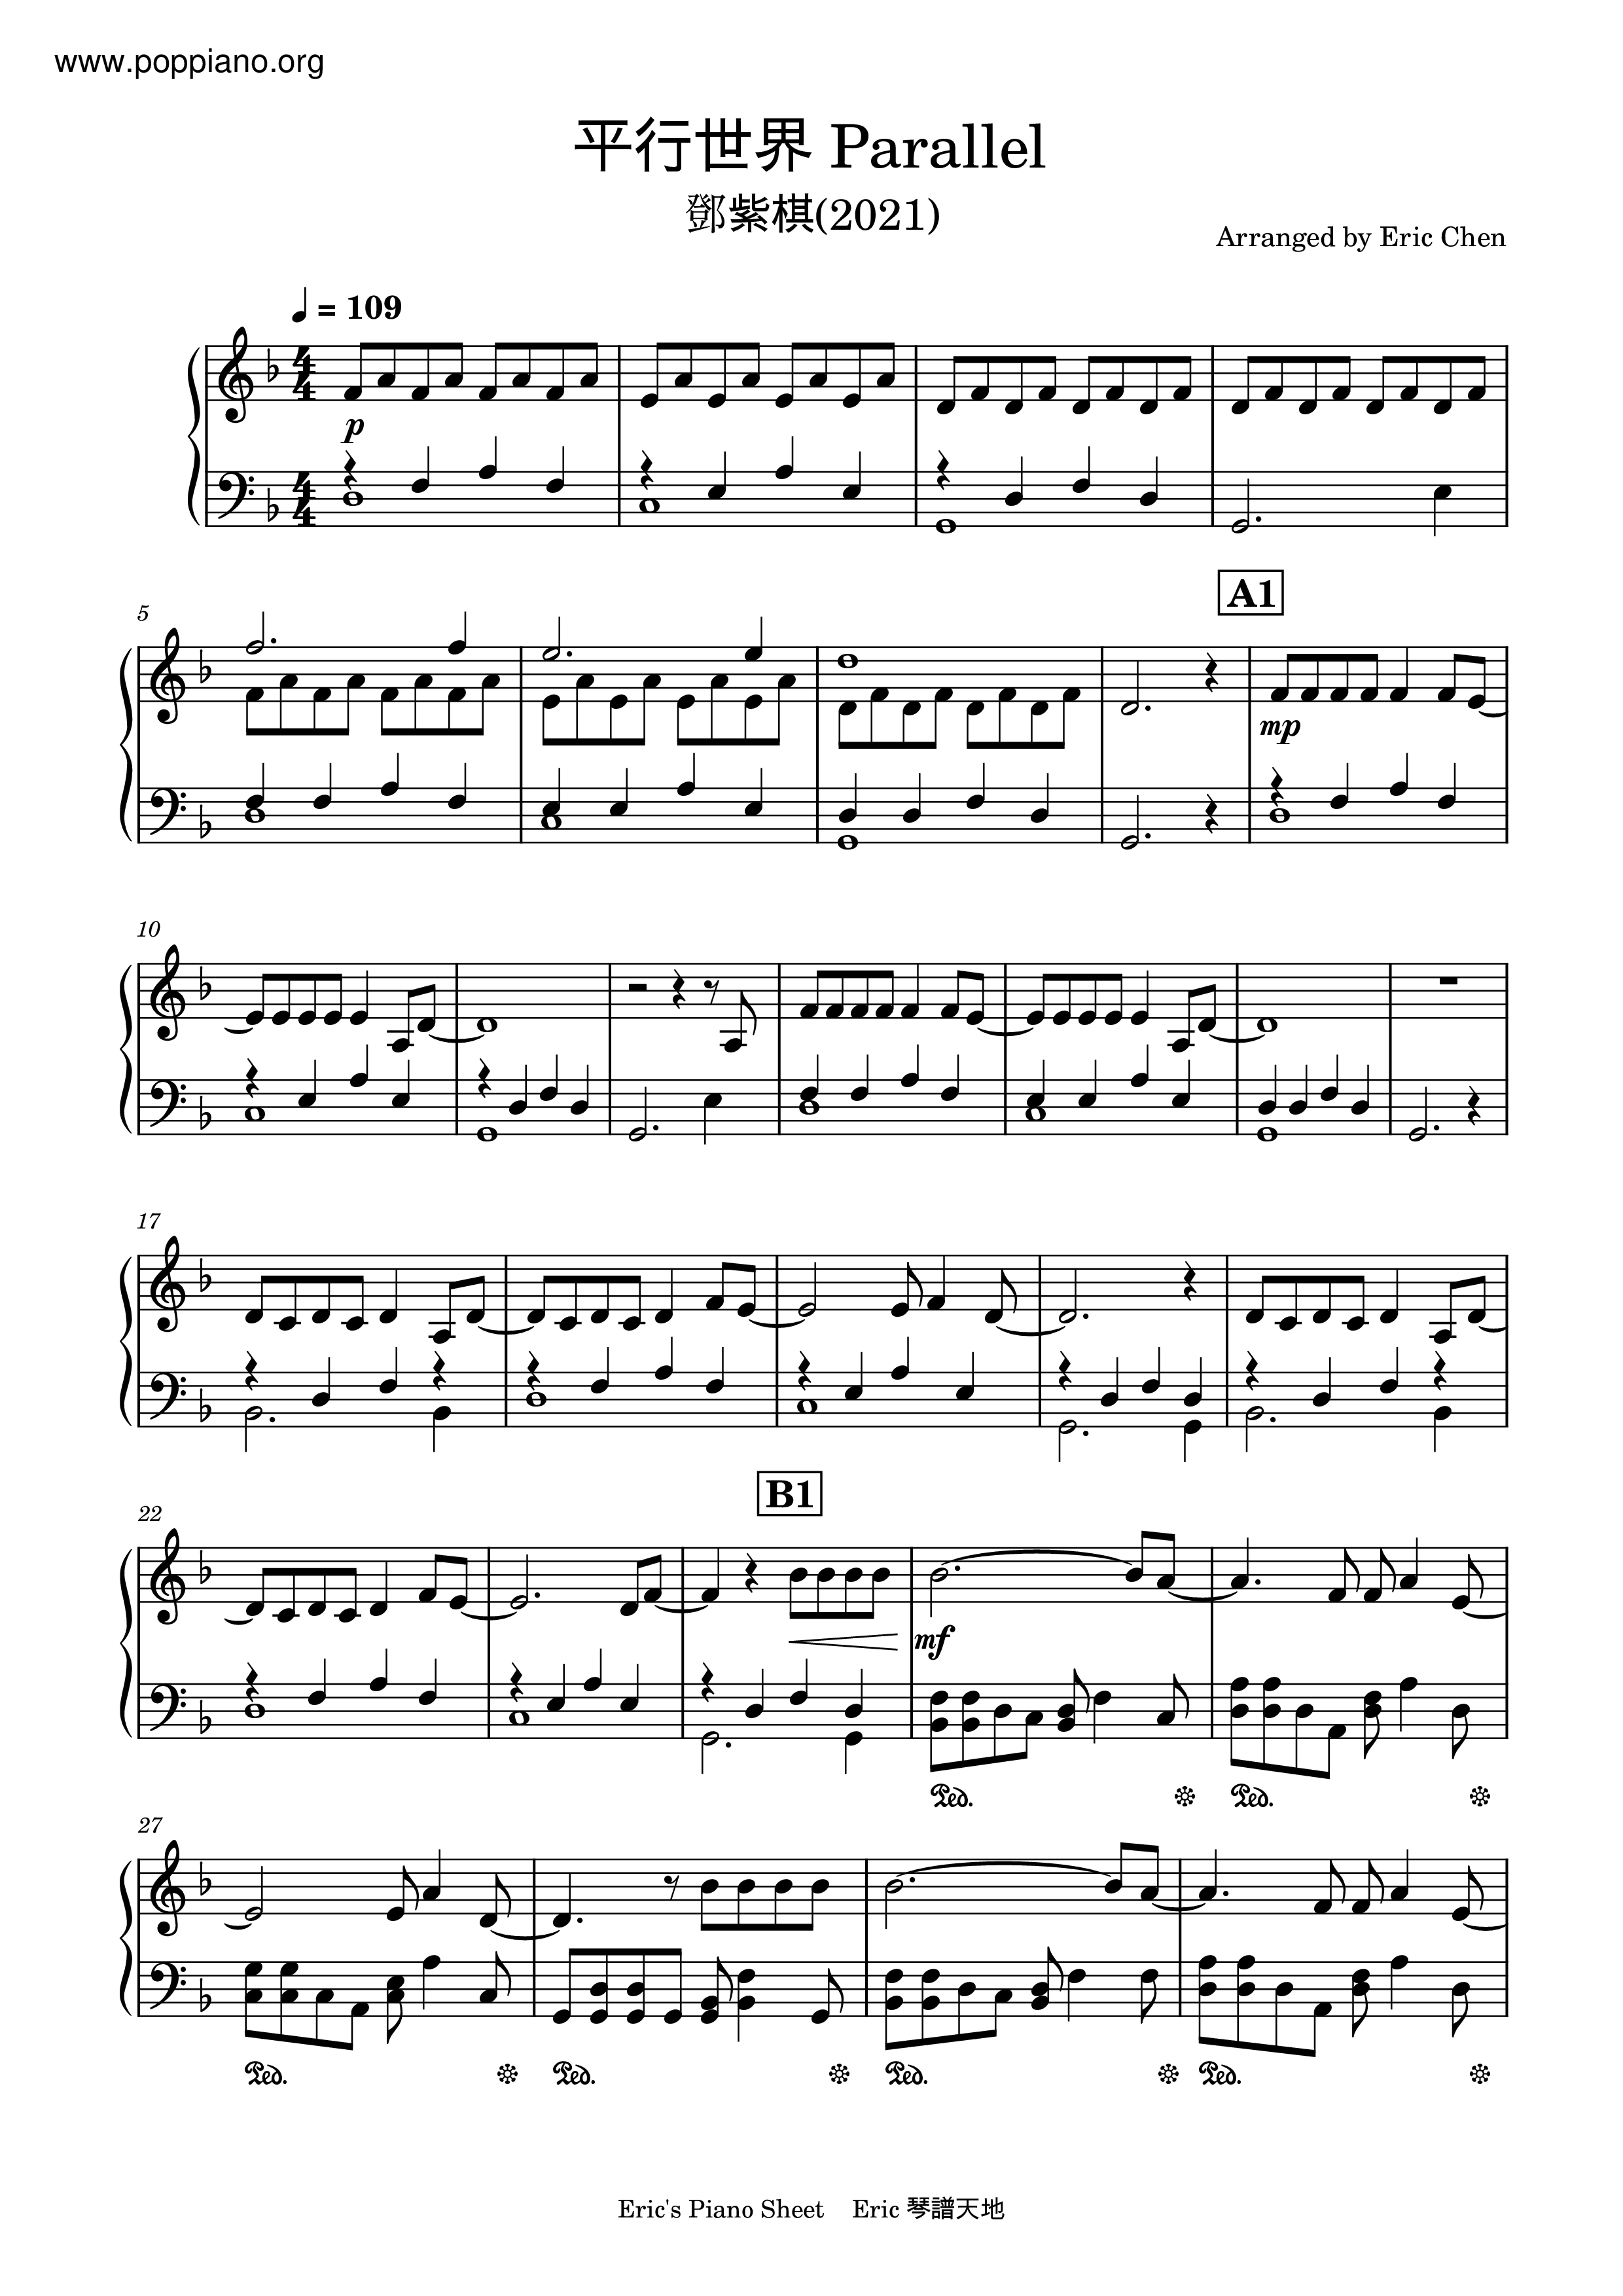 平行世界琴譜